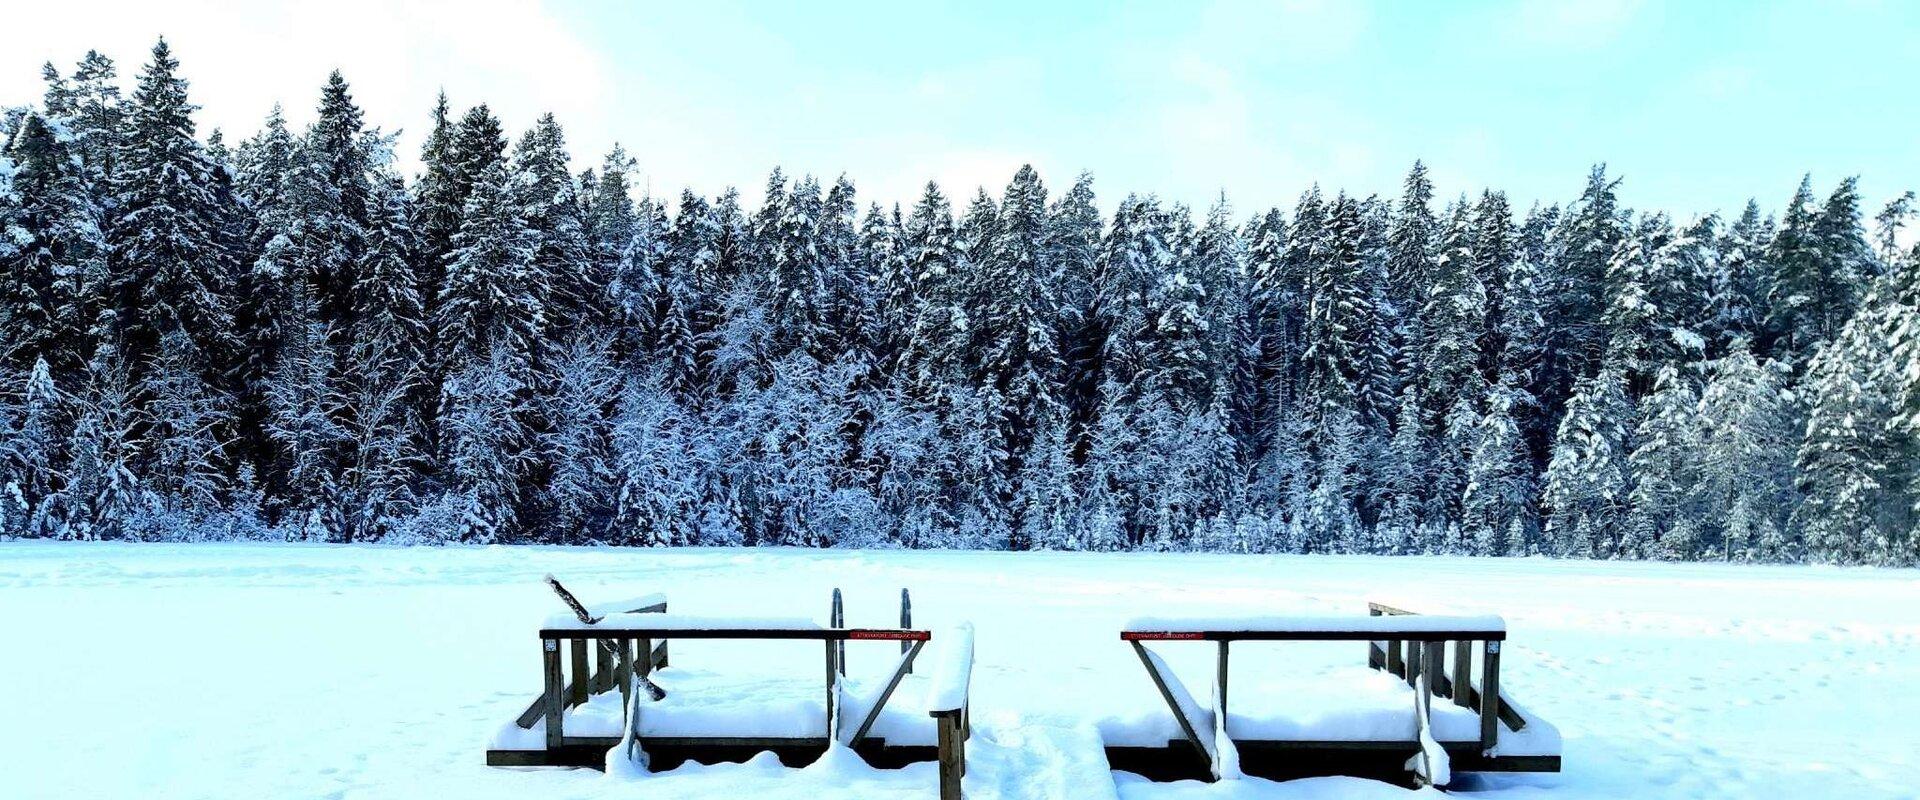 Badestelle am See Vaikne in einem schneereichen Winter